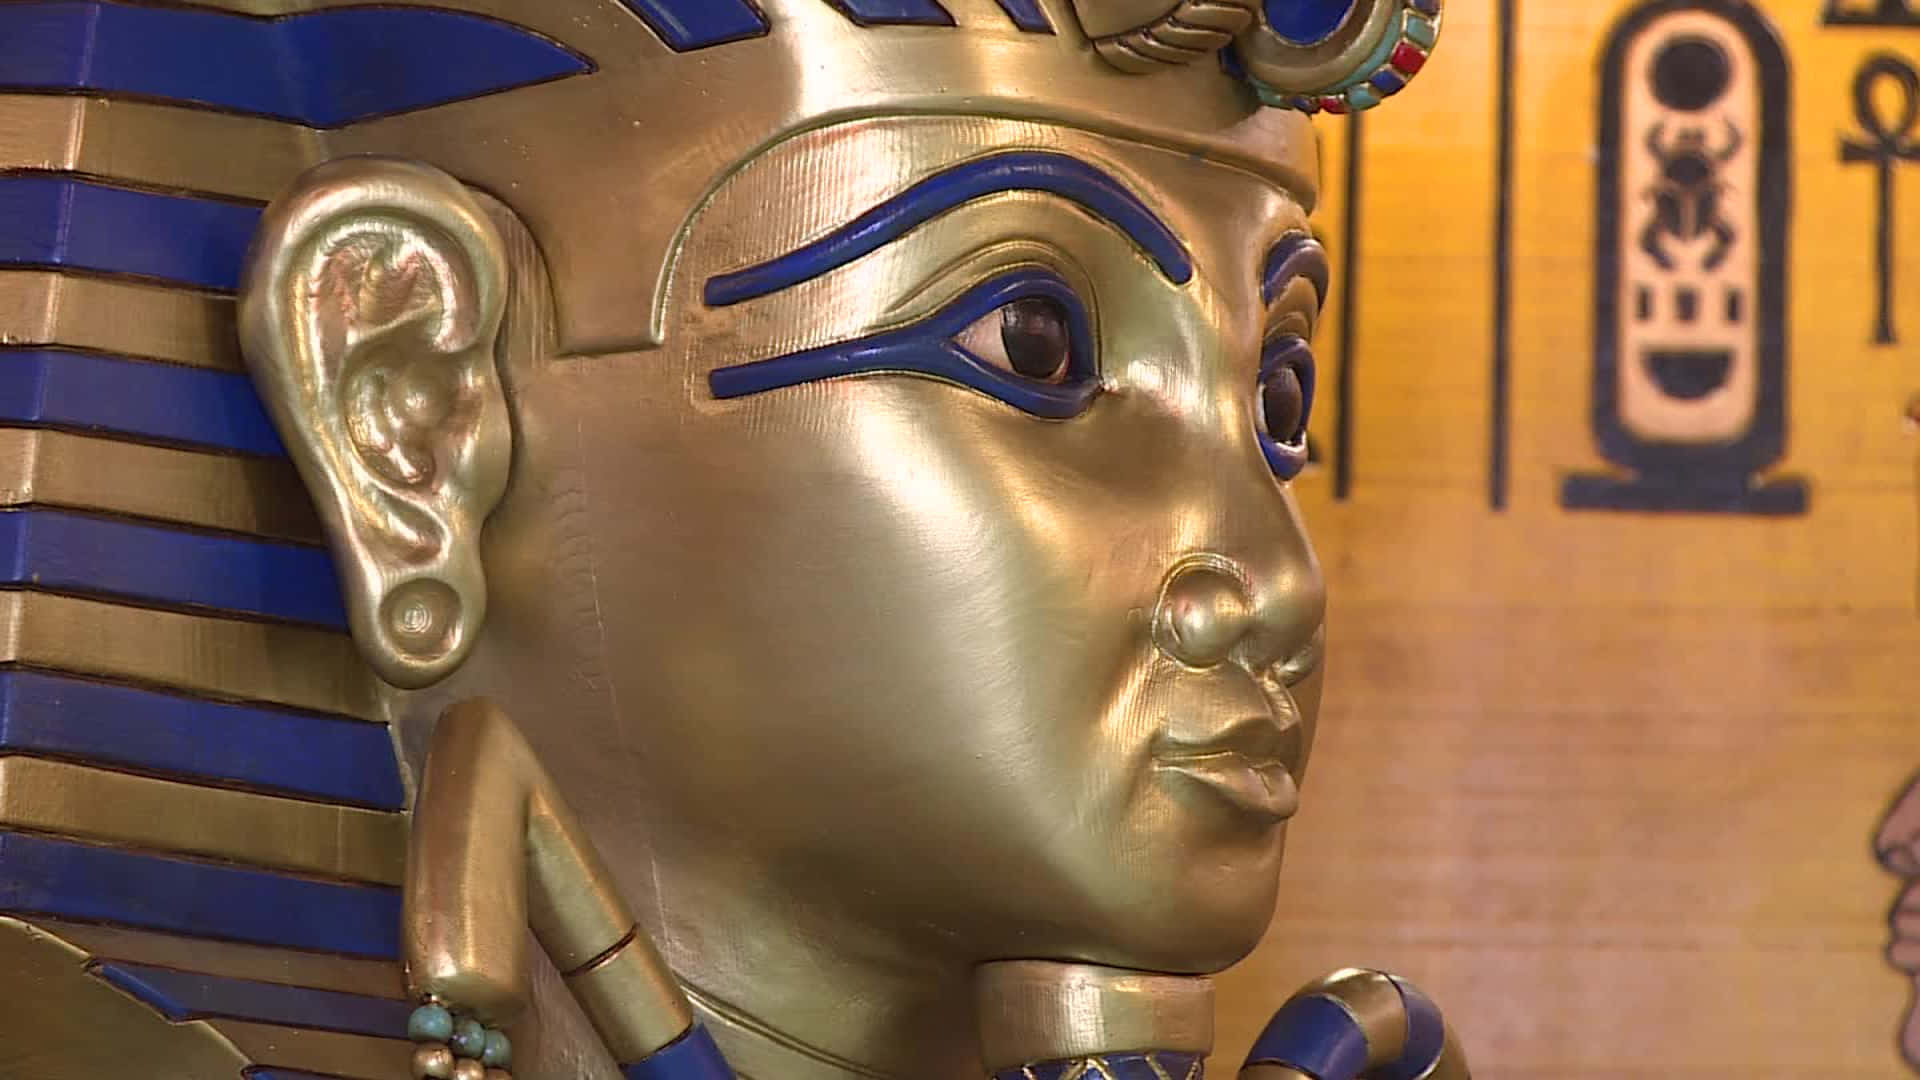 Einestatue Eines Ägyptischen Pharaos Mit Goldenen Und Blauen Augen. Wallpaper